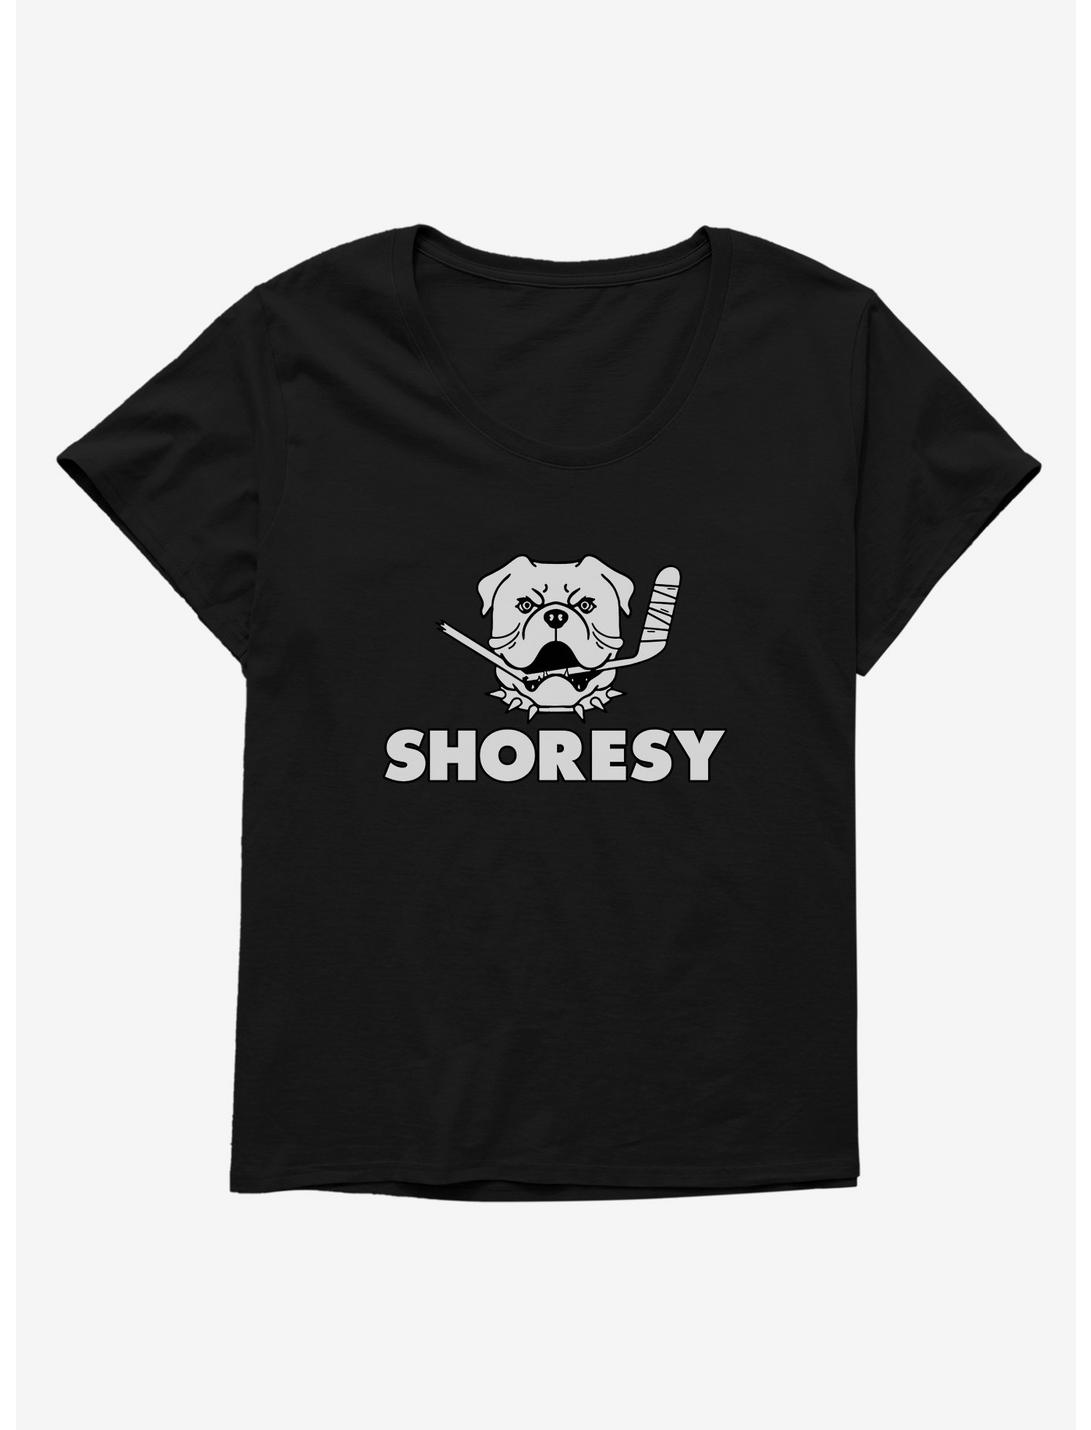 Shoresy Bulldog Logo Girls T-Shirt Plus Size, BLACK, hi-res